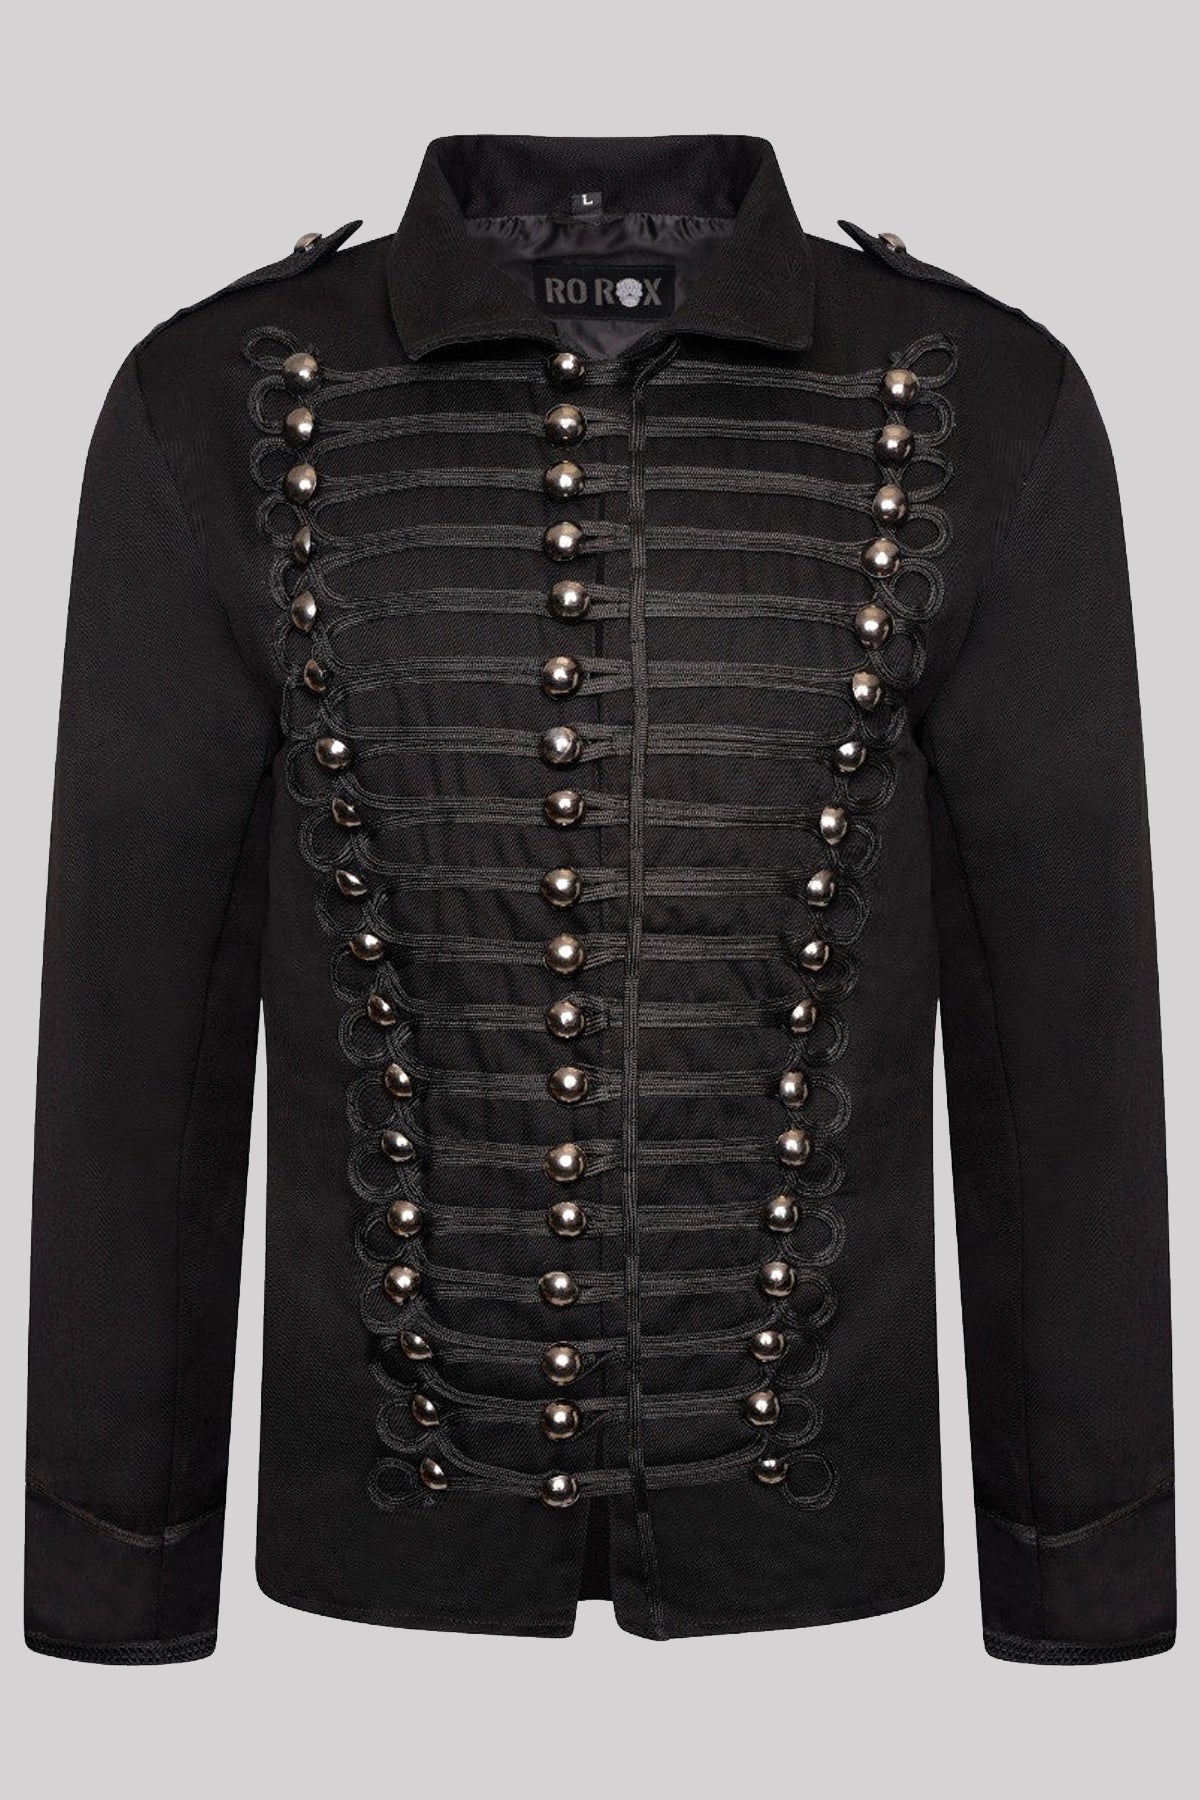 Ro Rox Military Black Parade Gothic Jacket